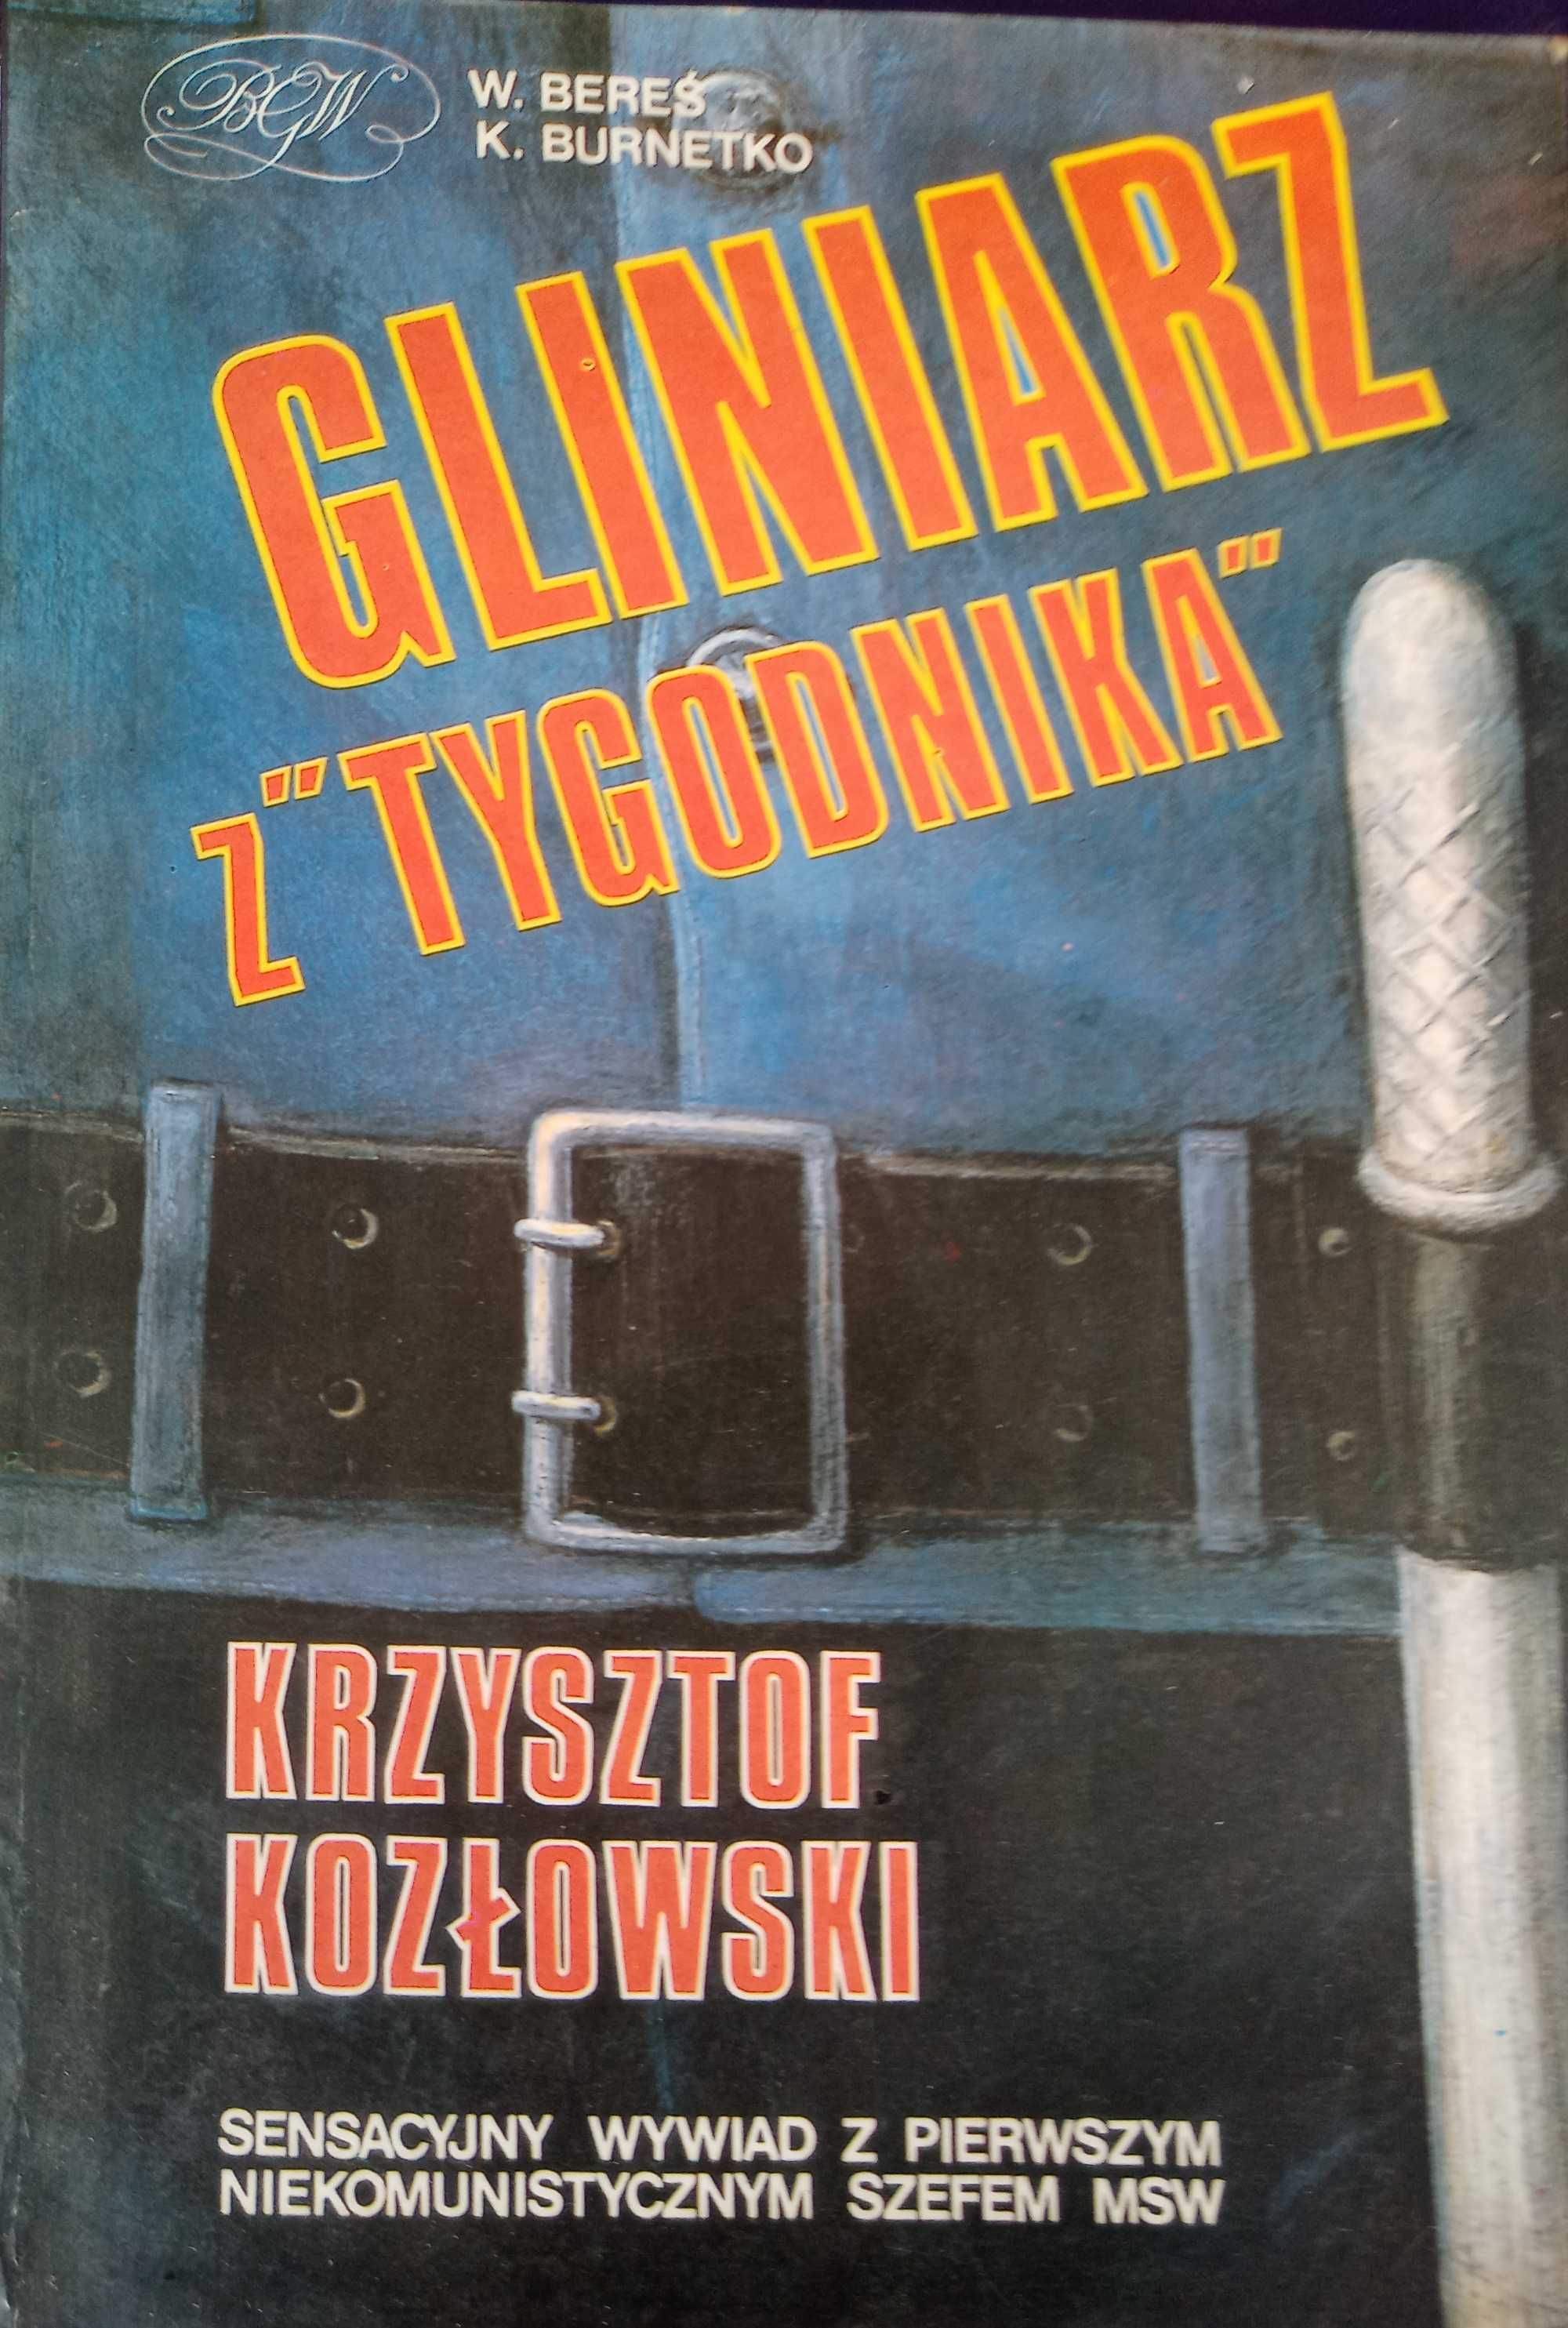 Gliniarz z Tygodnika. Krzysztof Kozłowski.